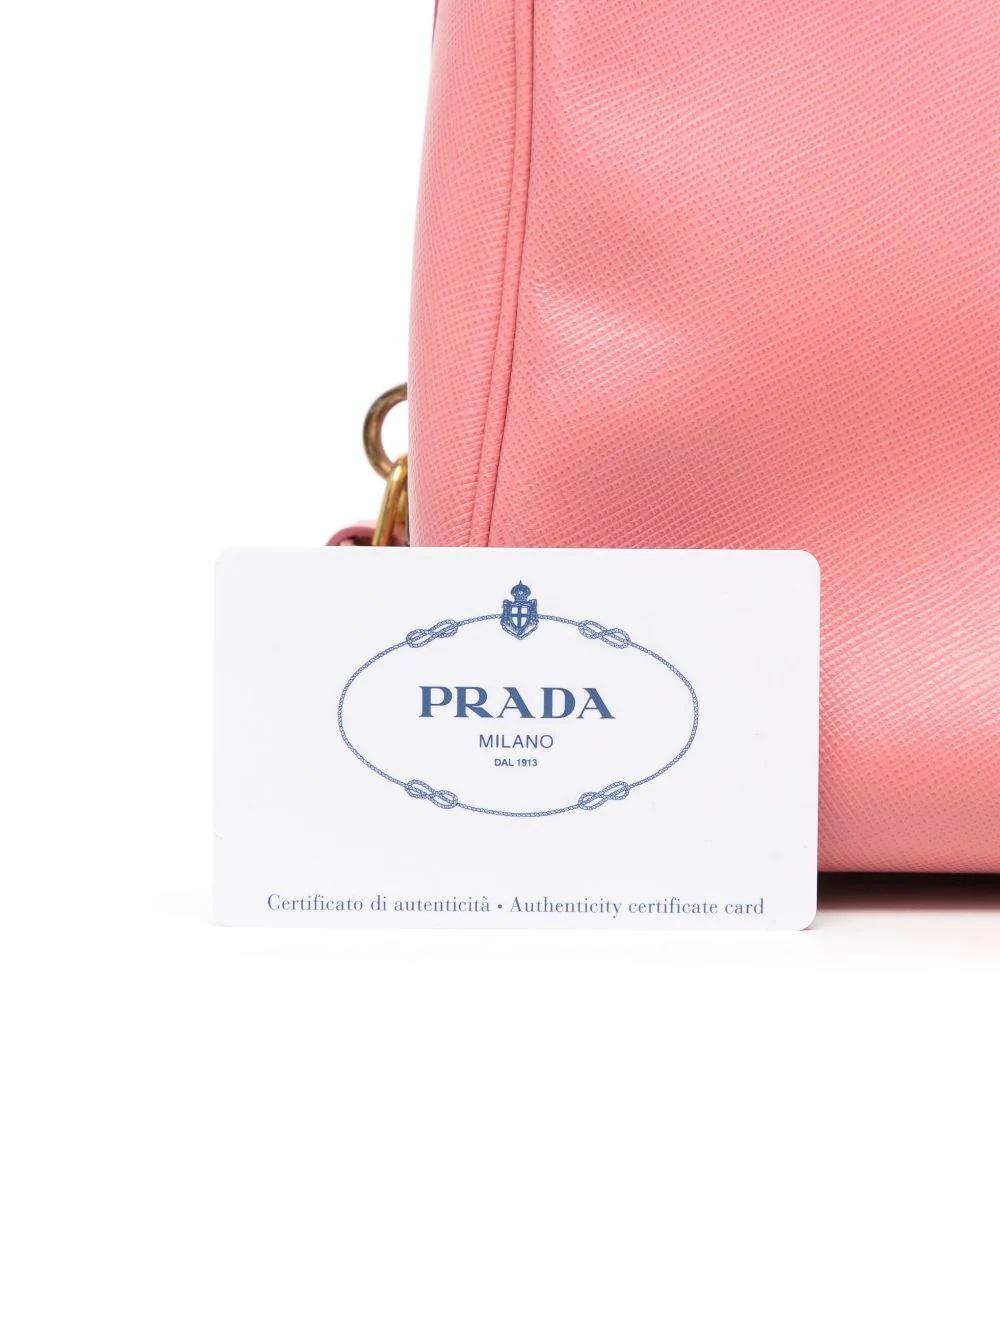 Women's or Men's Prada Promenade Pink Leather Handbag